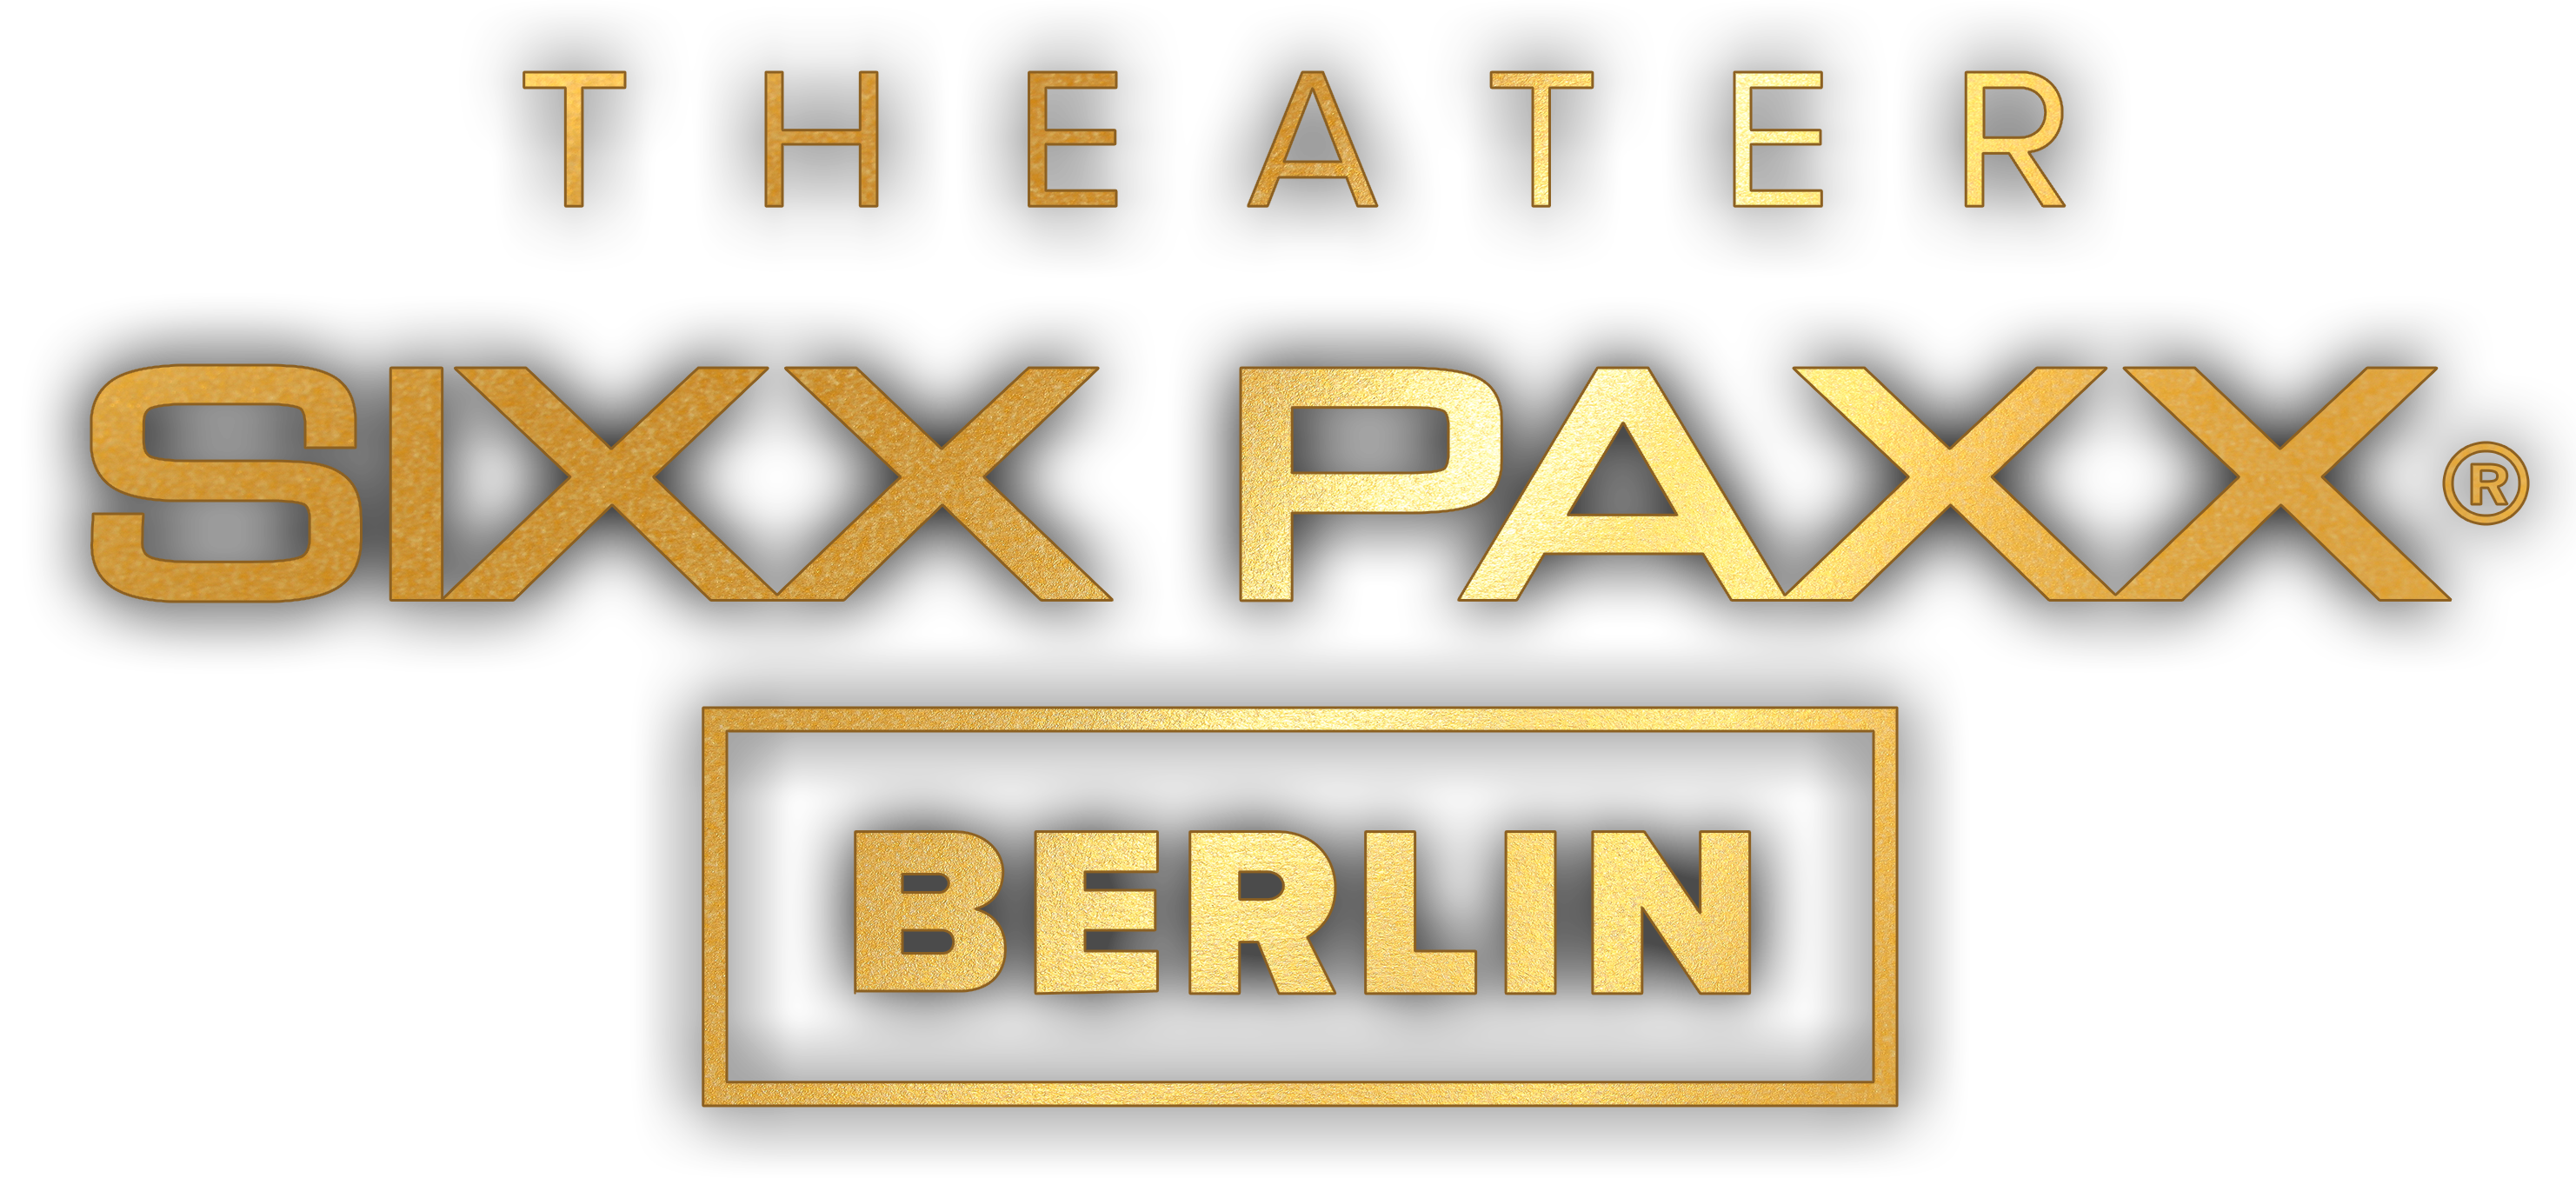 sixxpaxx